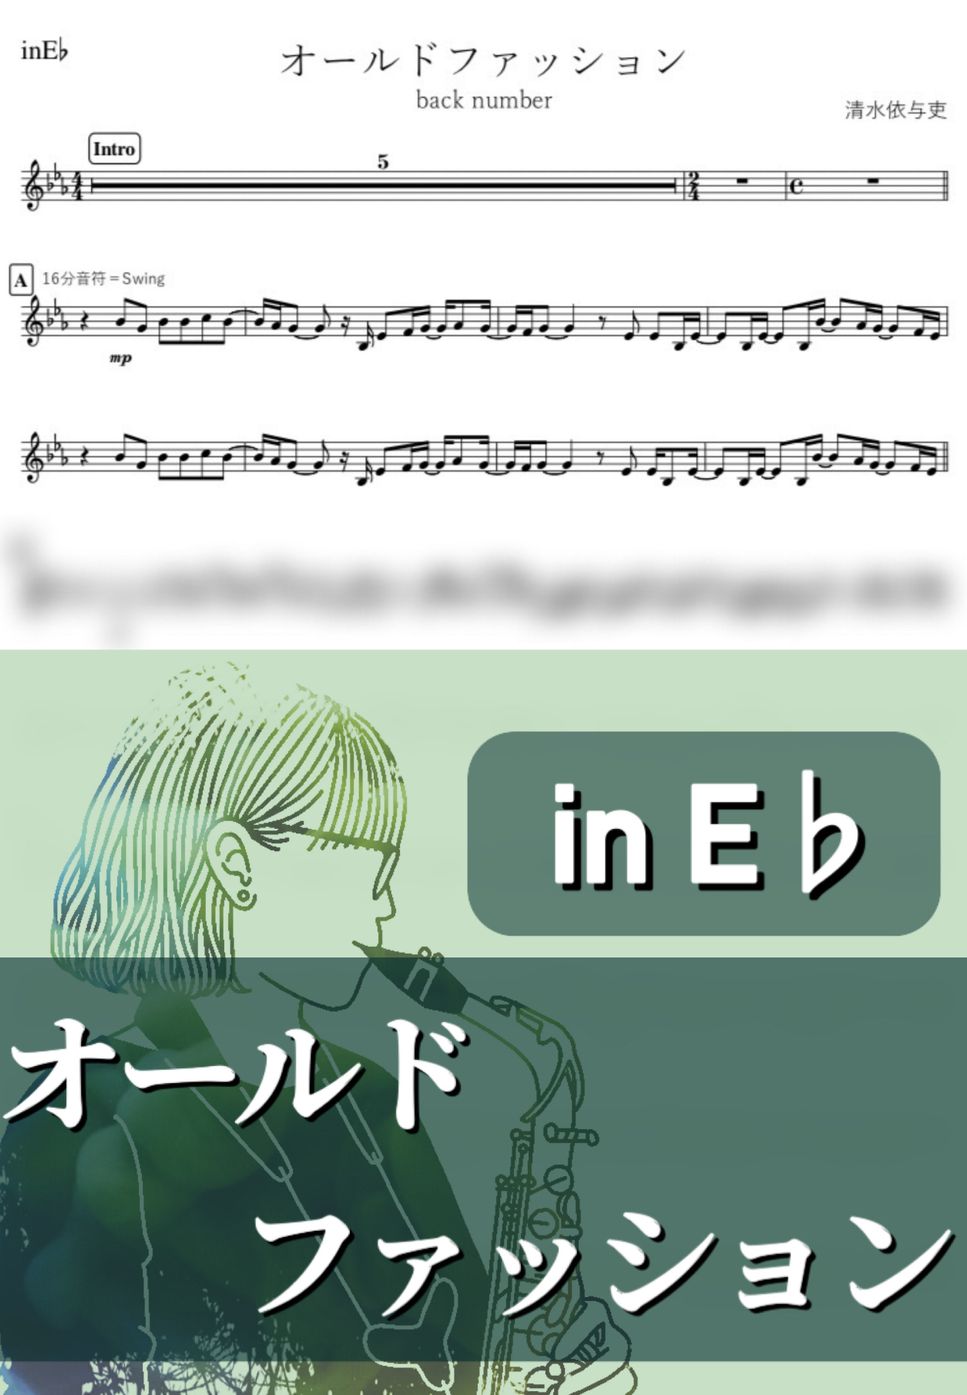 back number - オールドファッション (E♭) by kanamusic